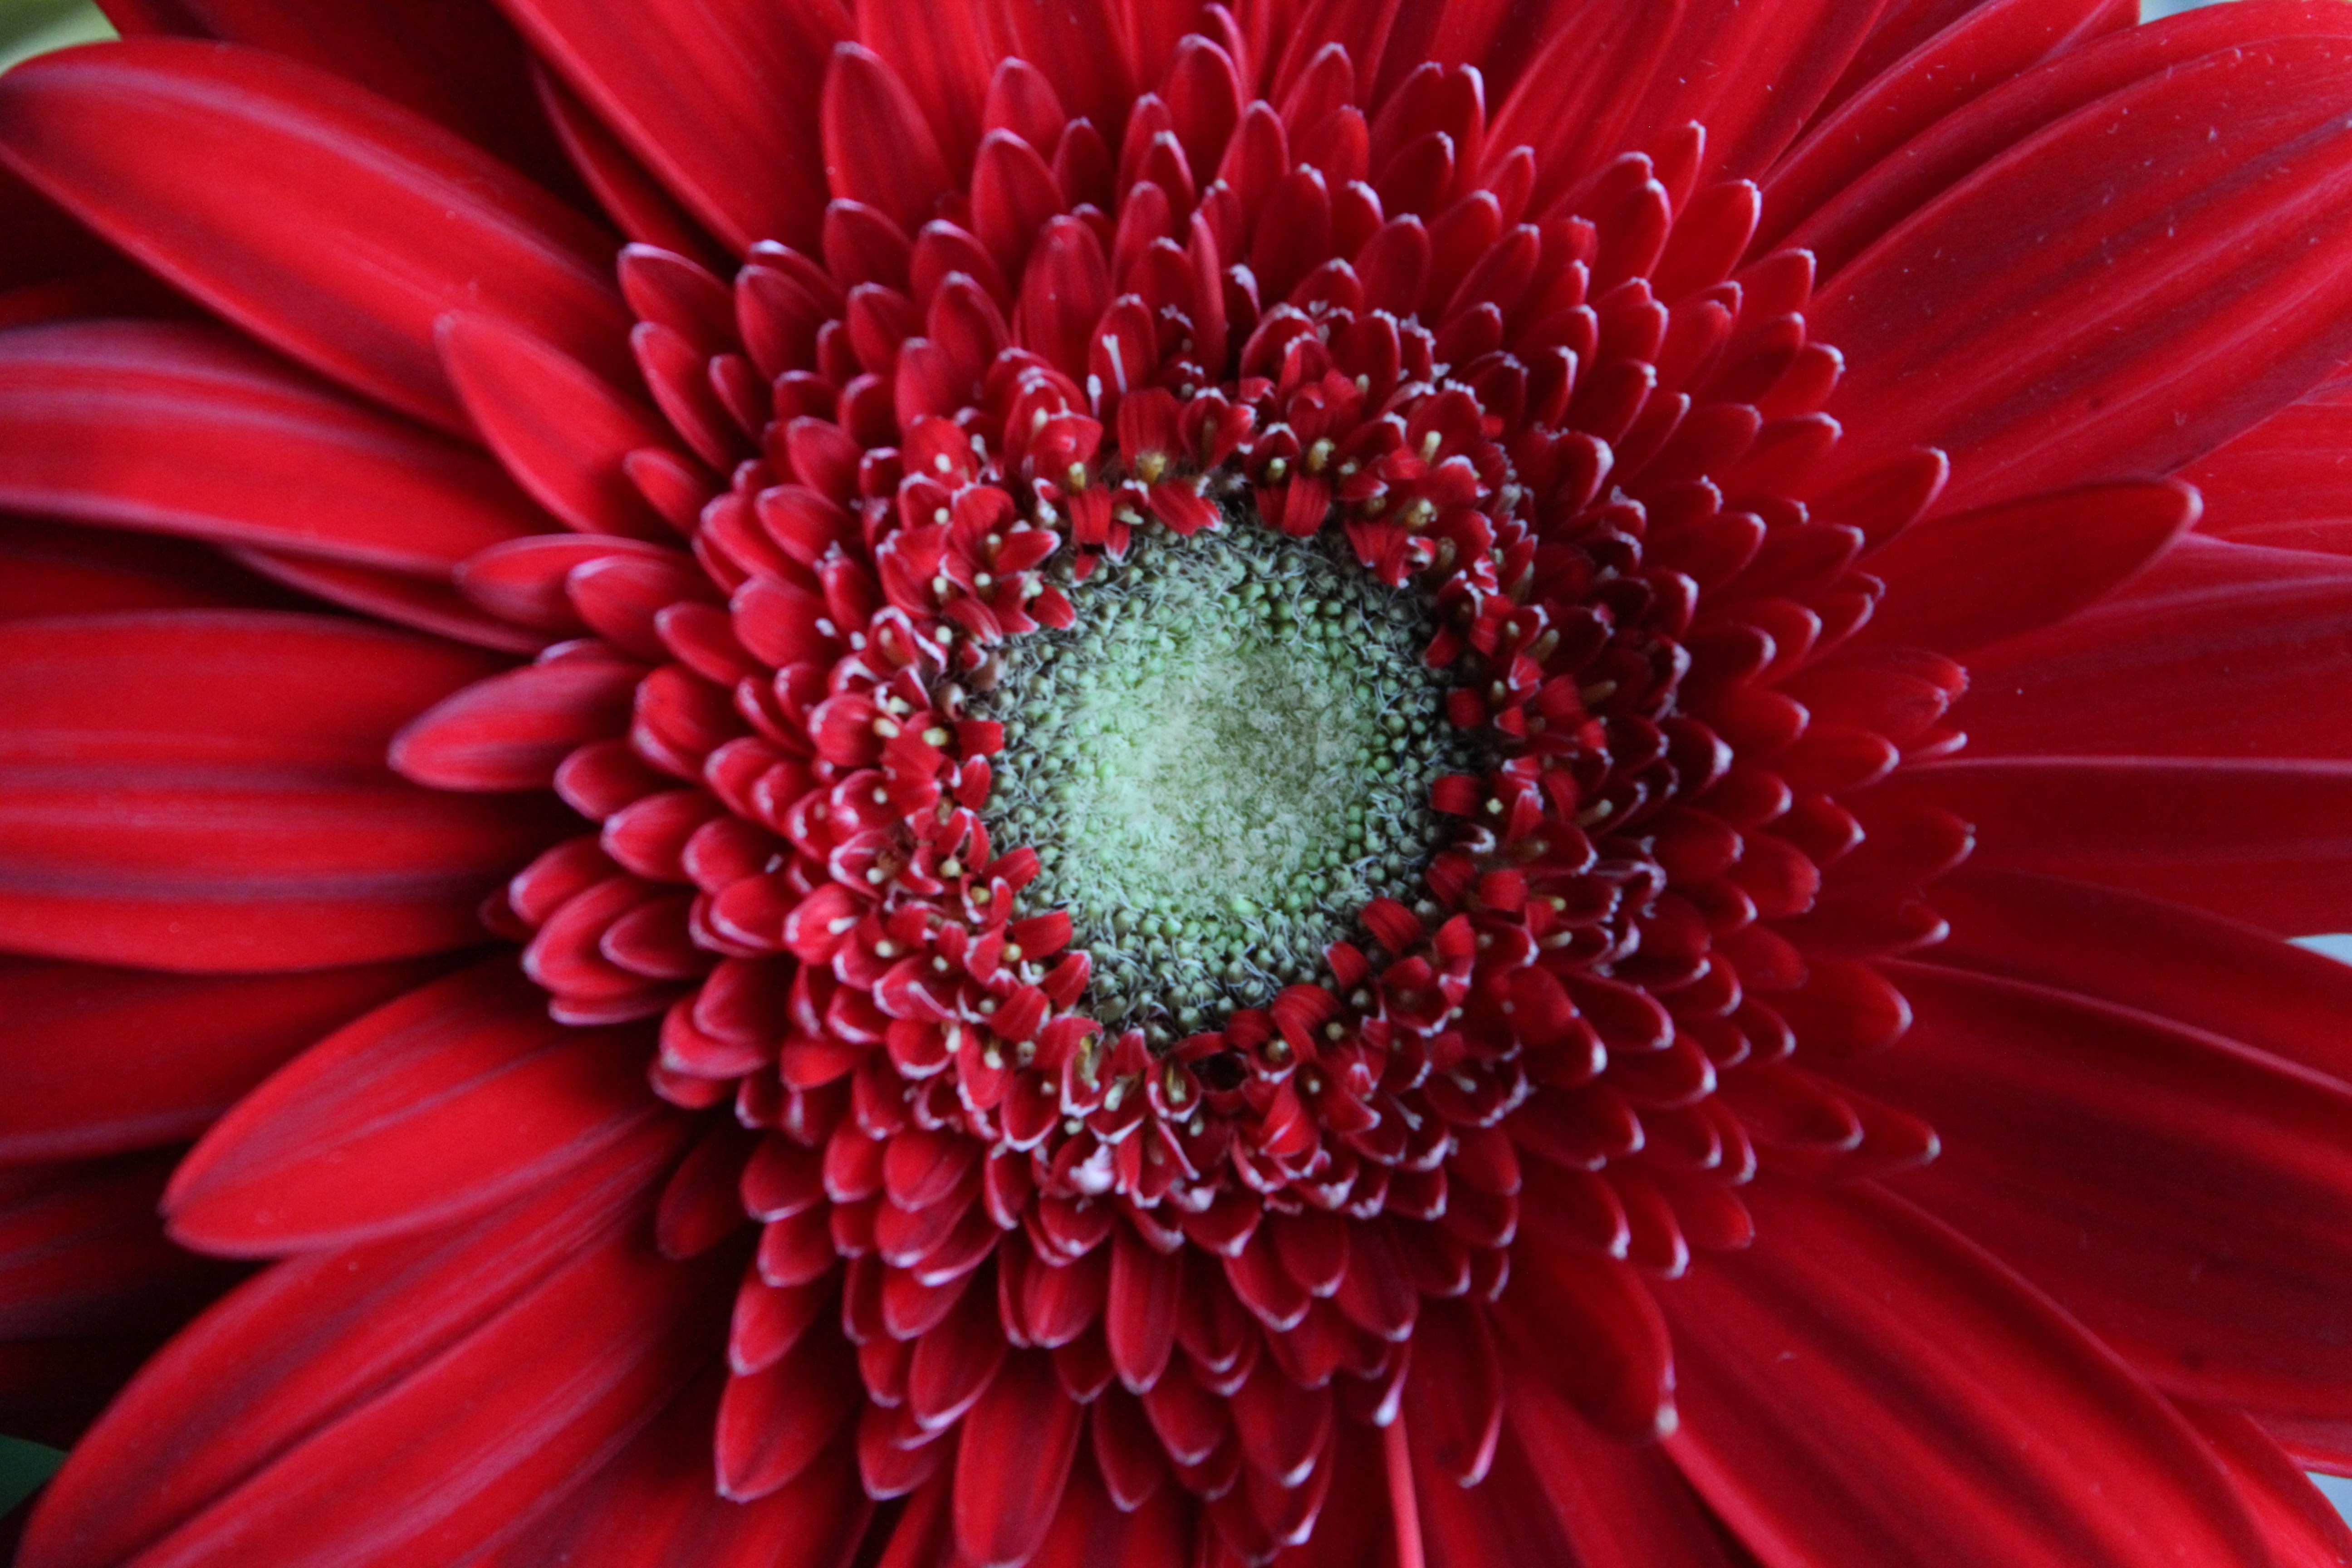 Red Gerbera Daisy Flower , HD Wallpaper & Backgrounds